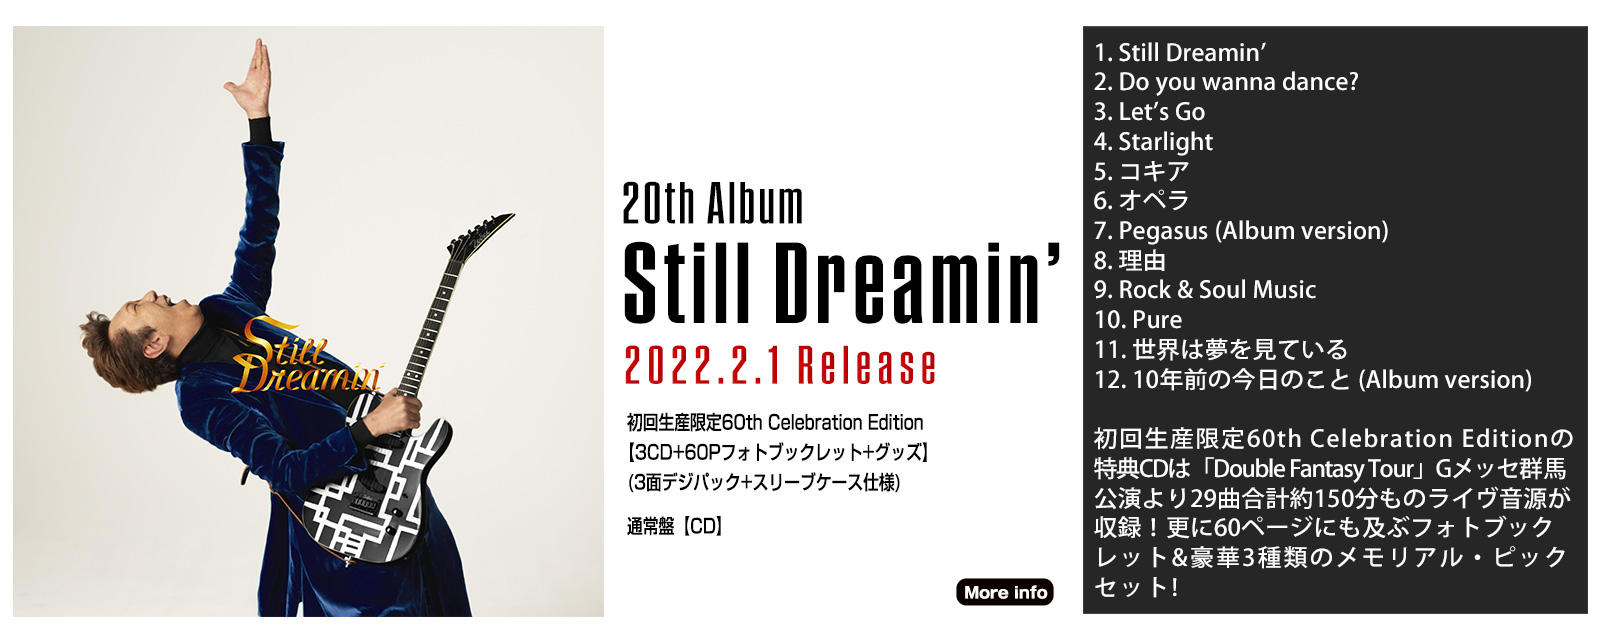 20th Album Still Dreamin'